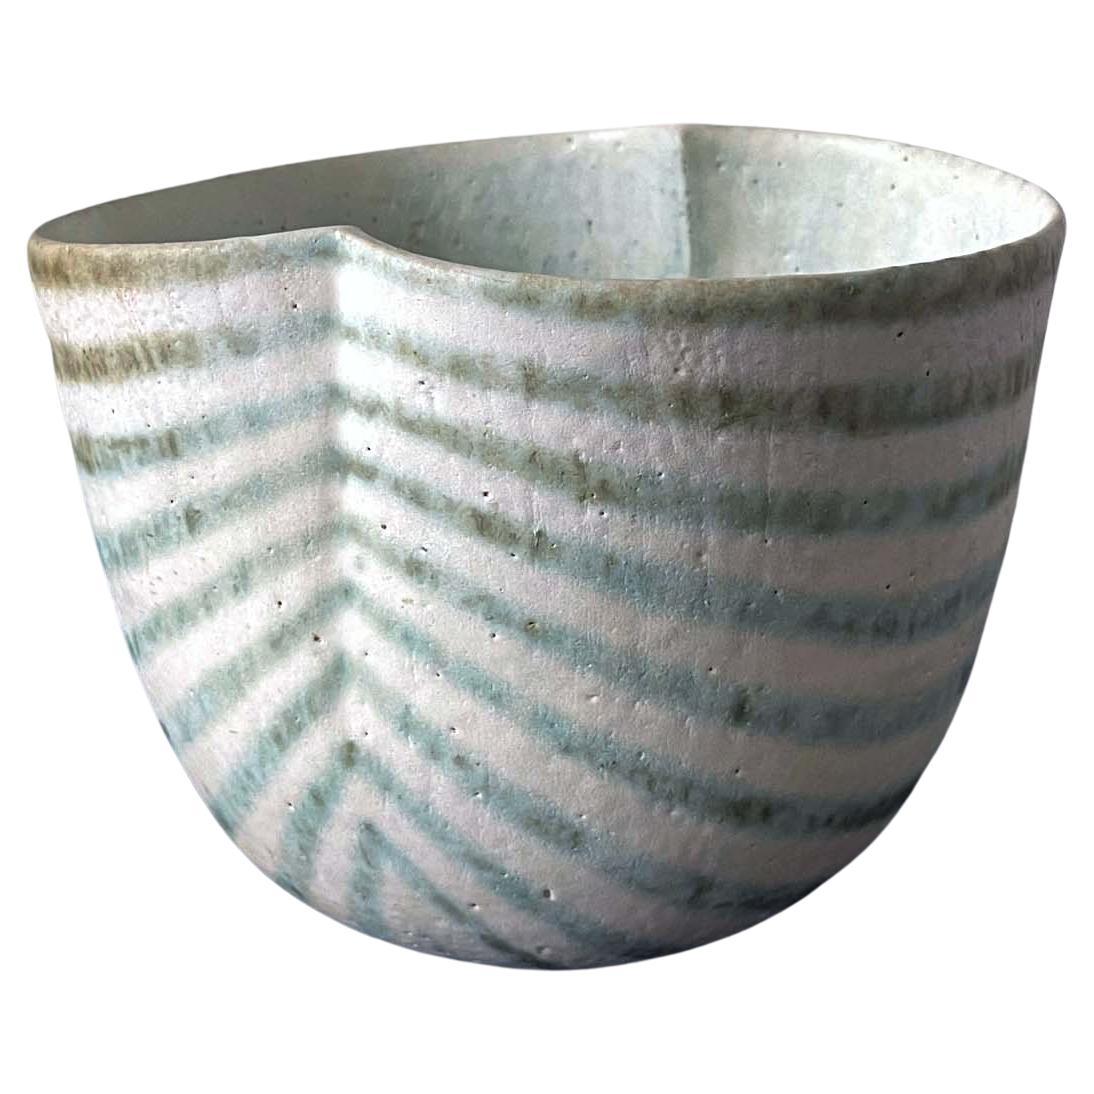 Keramikgefäß in Schalenform von British Studio Potter John Ward